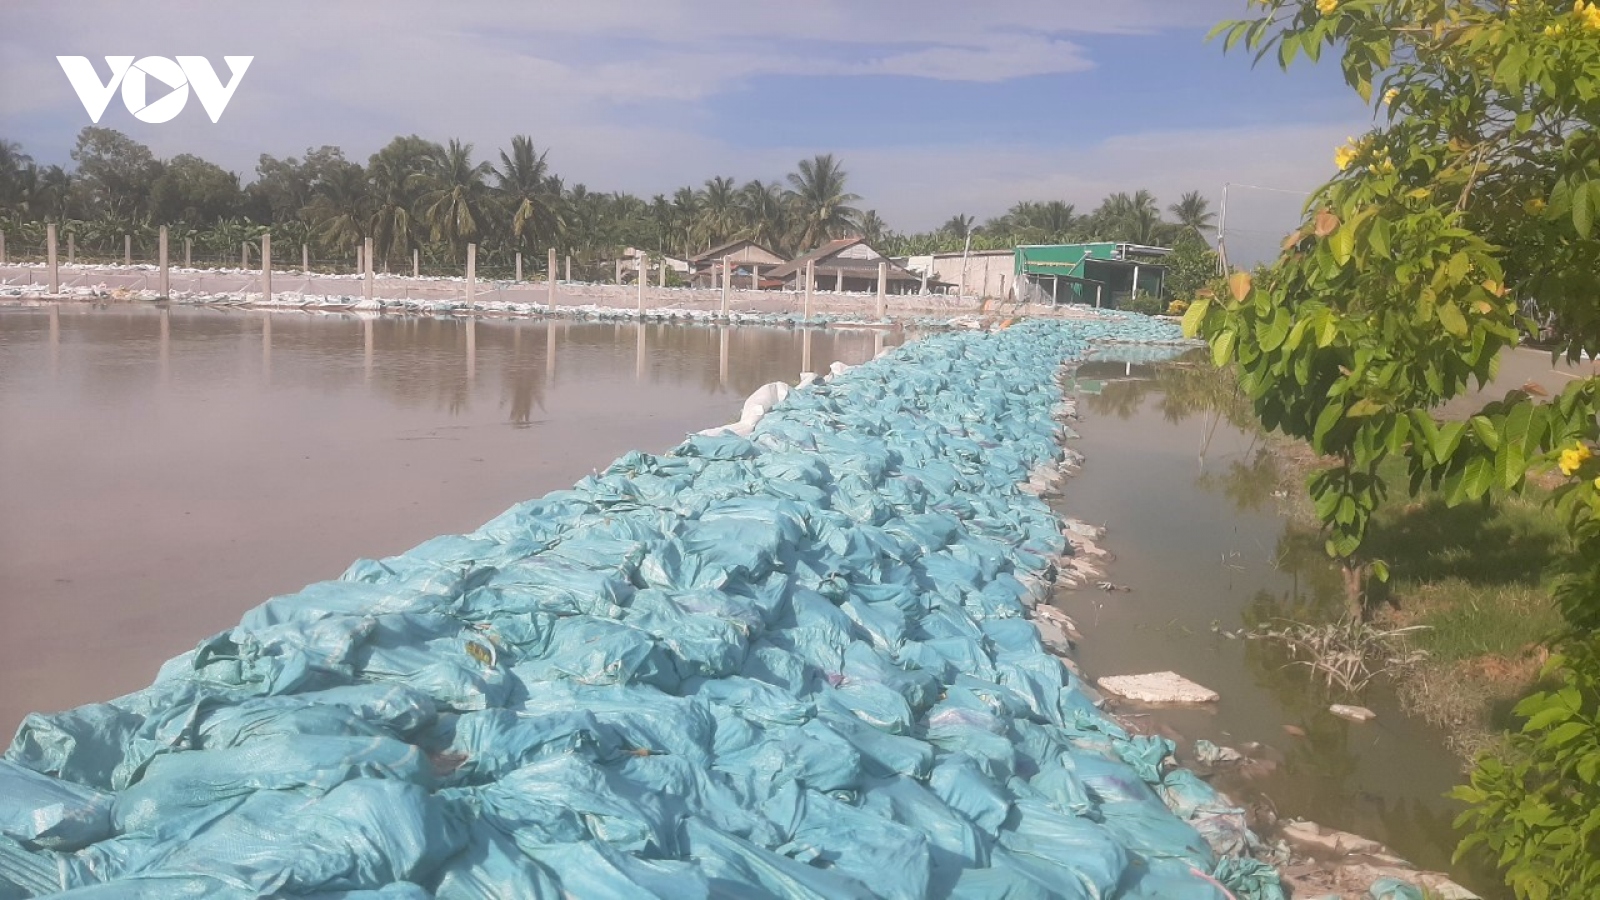 Tỉnh Tiền Giang chỉ đạo xử lý việc ao trữ bùn cát gây ngập úng do VOV phản ánh